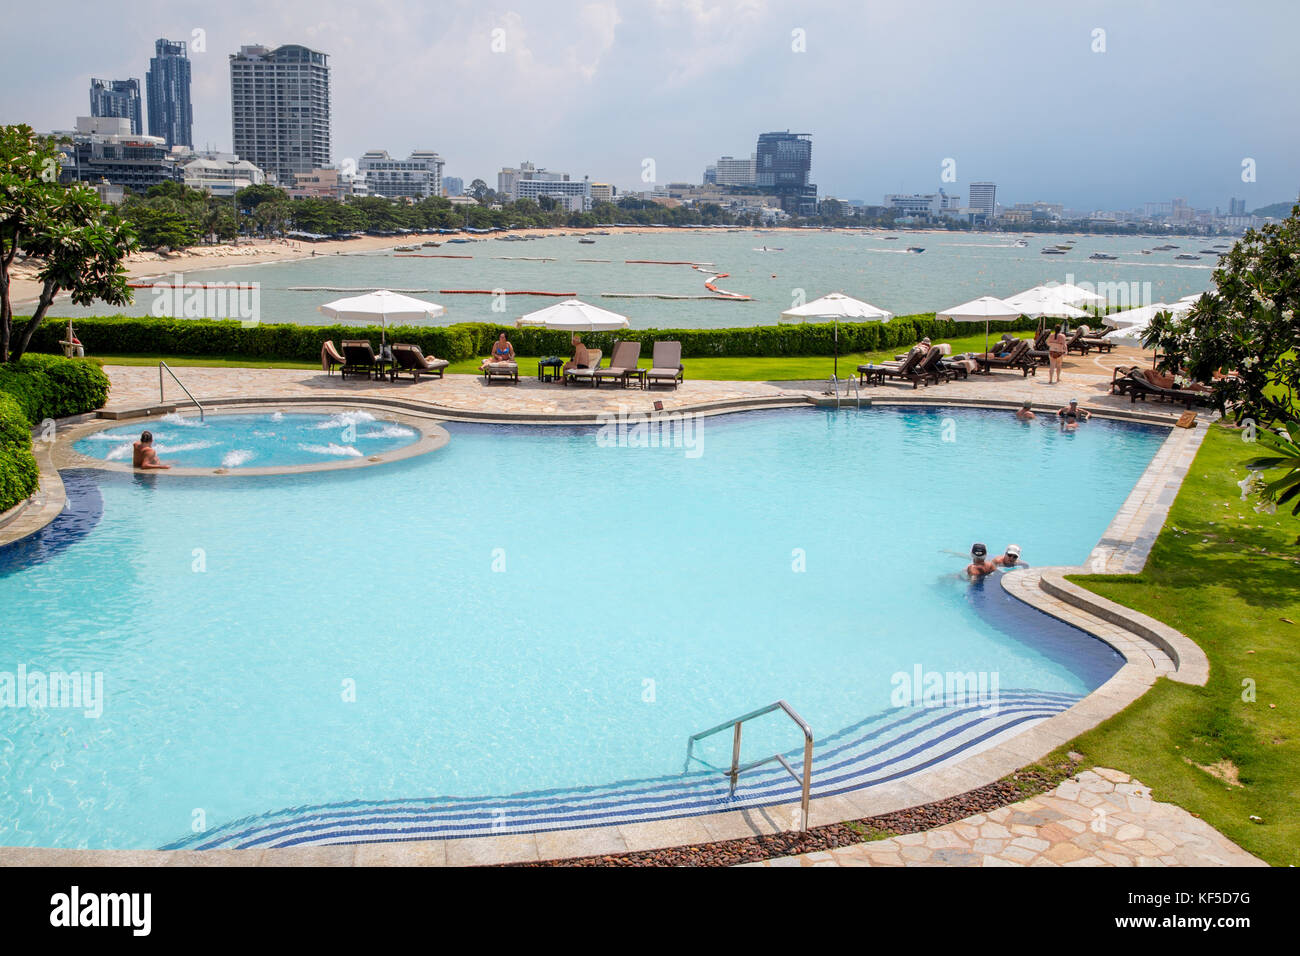 Le Dusit Thani hotel de luxe et piscine à Pattaya, Thaïlande Banque D'Images